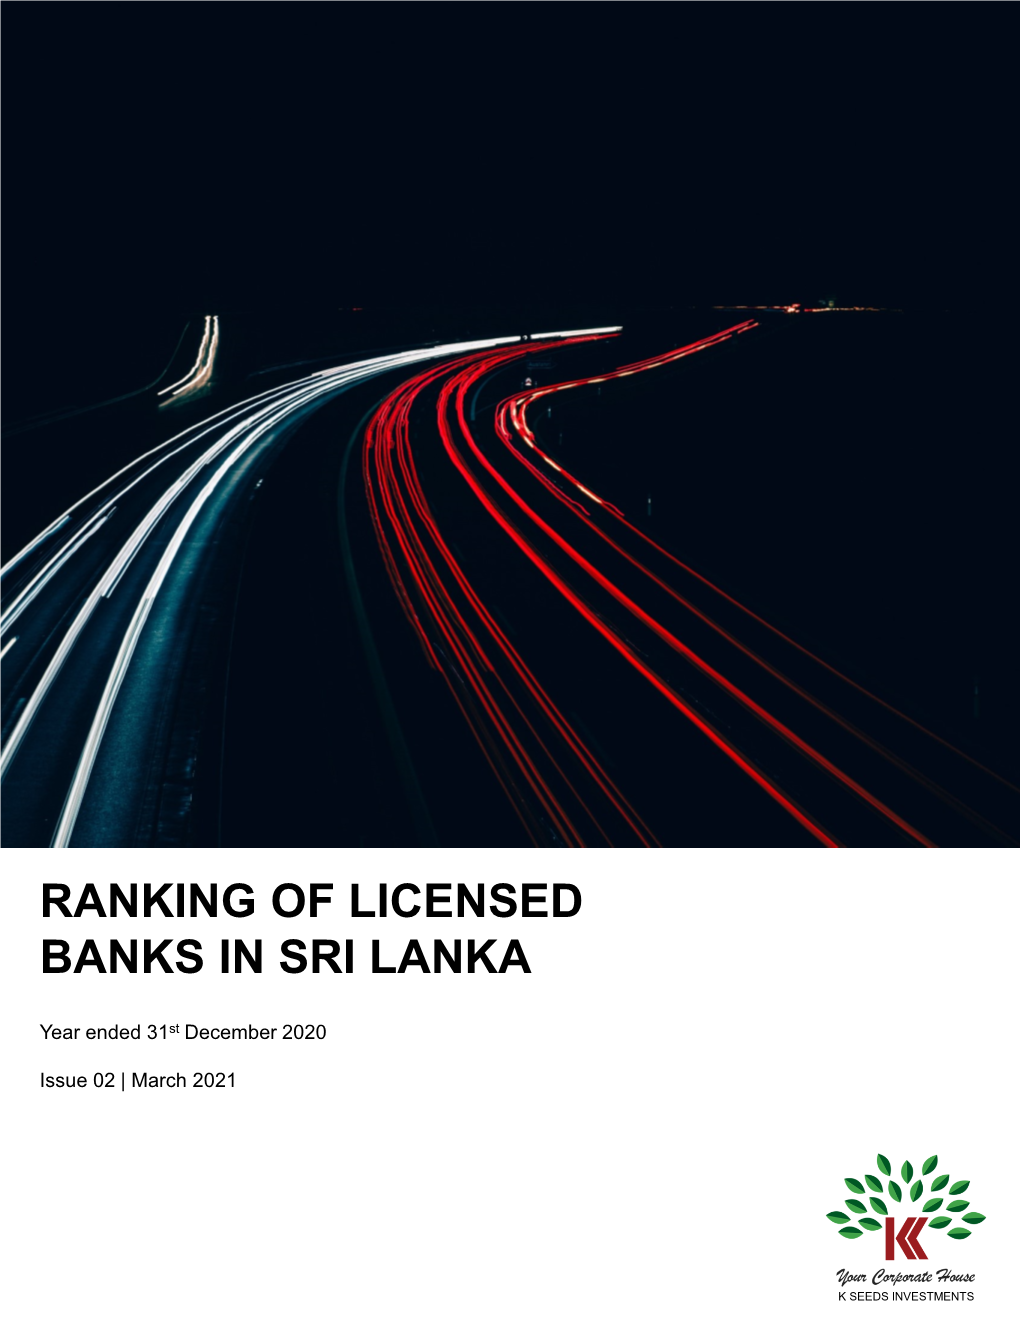 Ranking of Licensed Banks in Sri Lanka